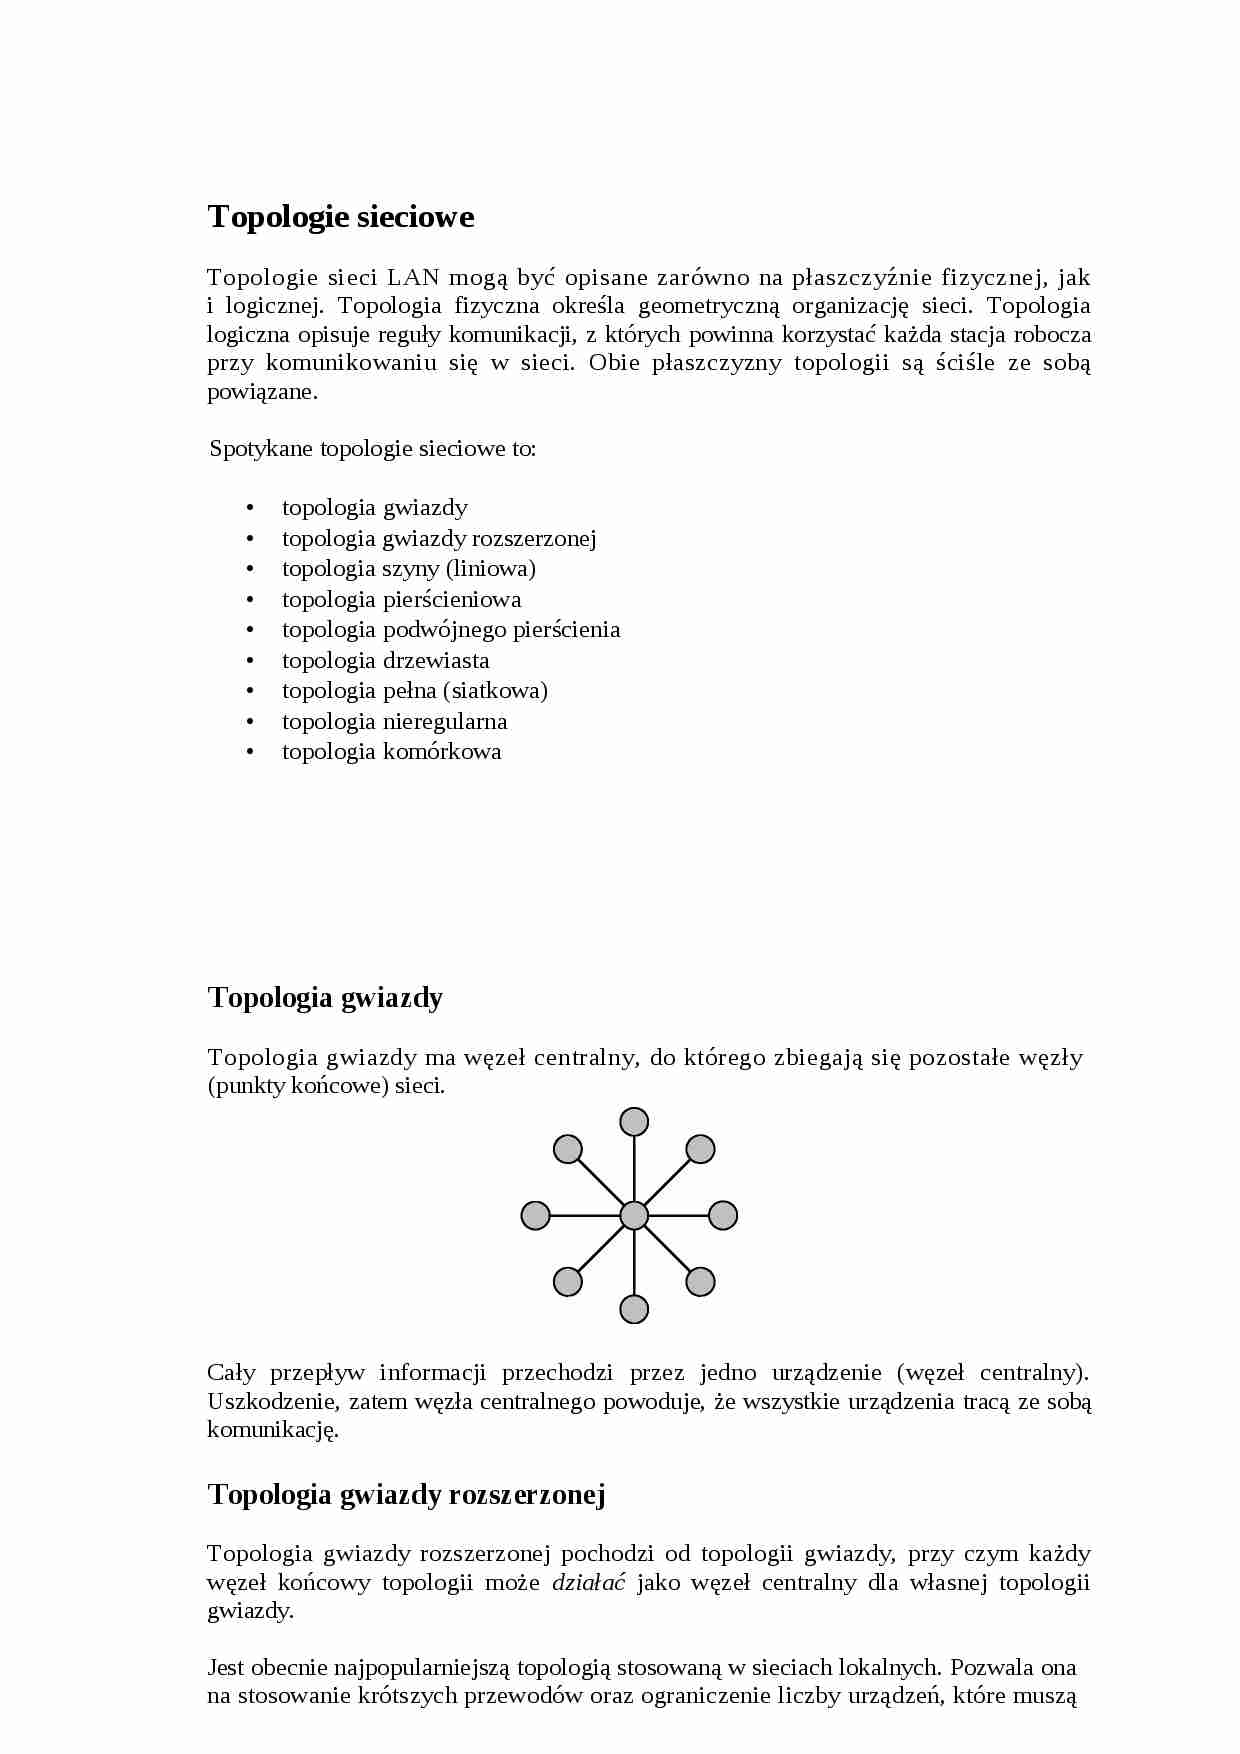 Topologie sieciowe - strona 1